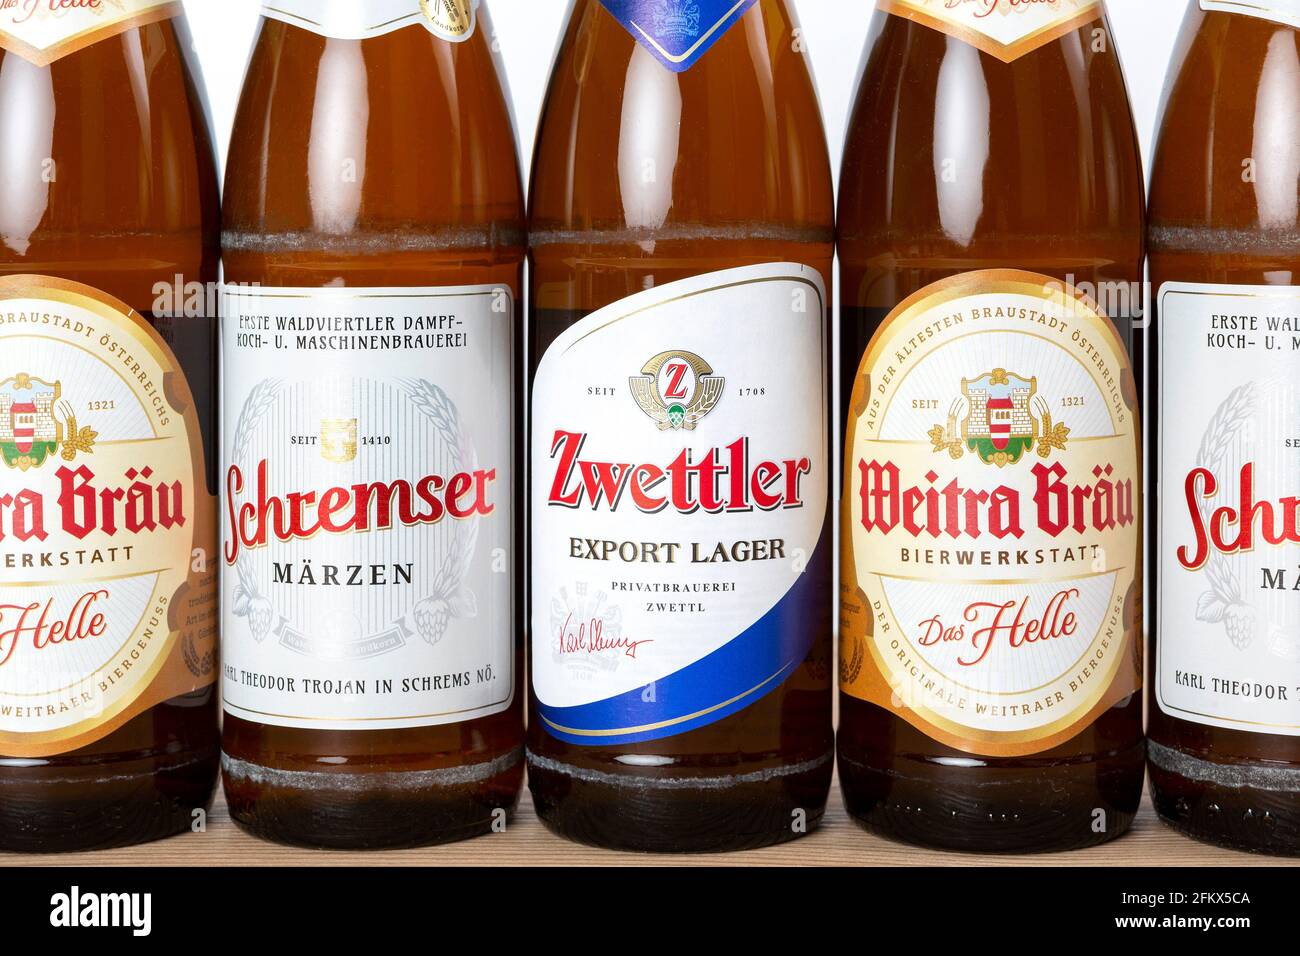 Waldviertler Beer, Zwettler, Weitra Bräu And Schremser, Austria Stock Photo